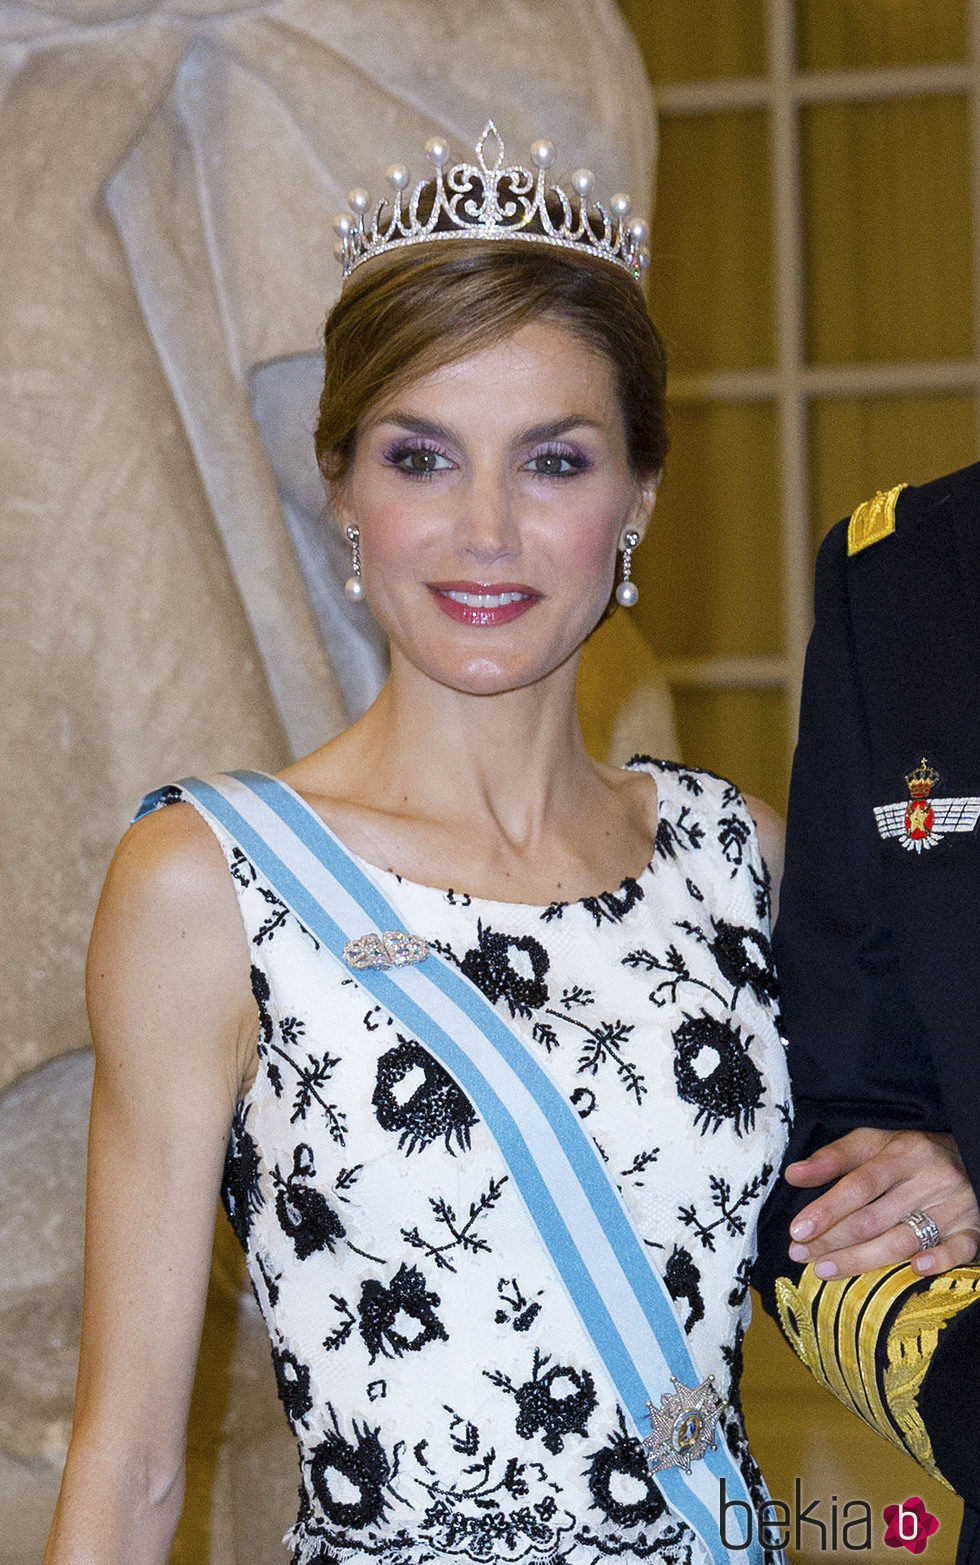 El maquillaje de la Reina Letizia en el 75 cumpleaños de la Reina Margarita de Dinamarca